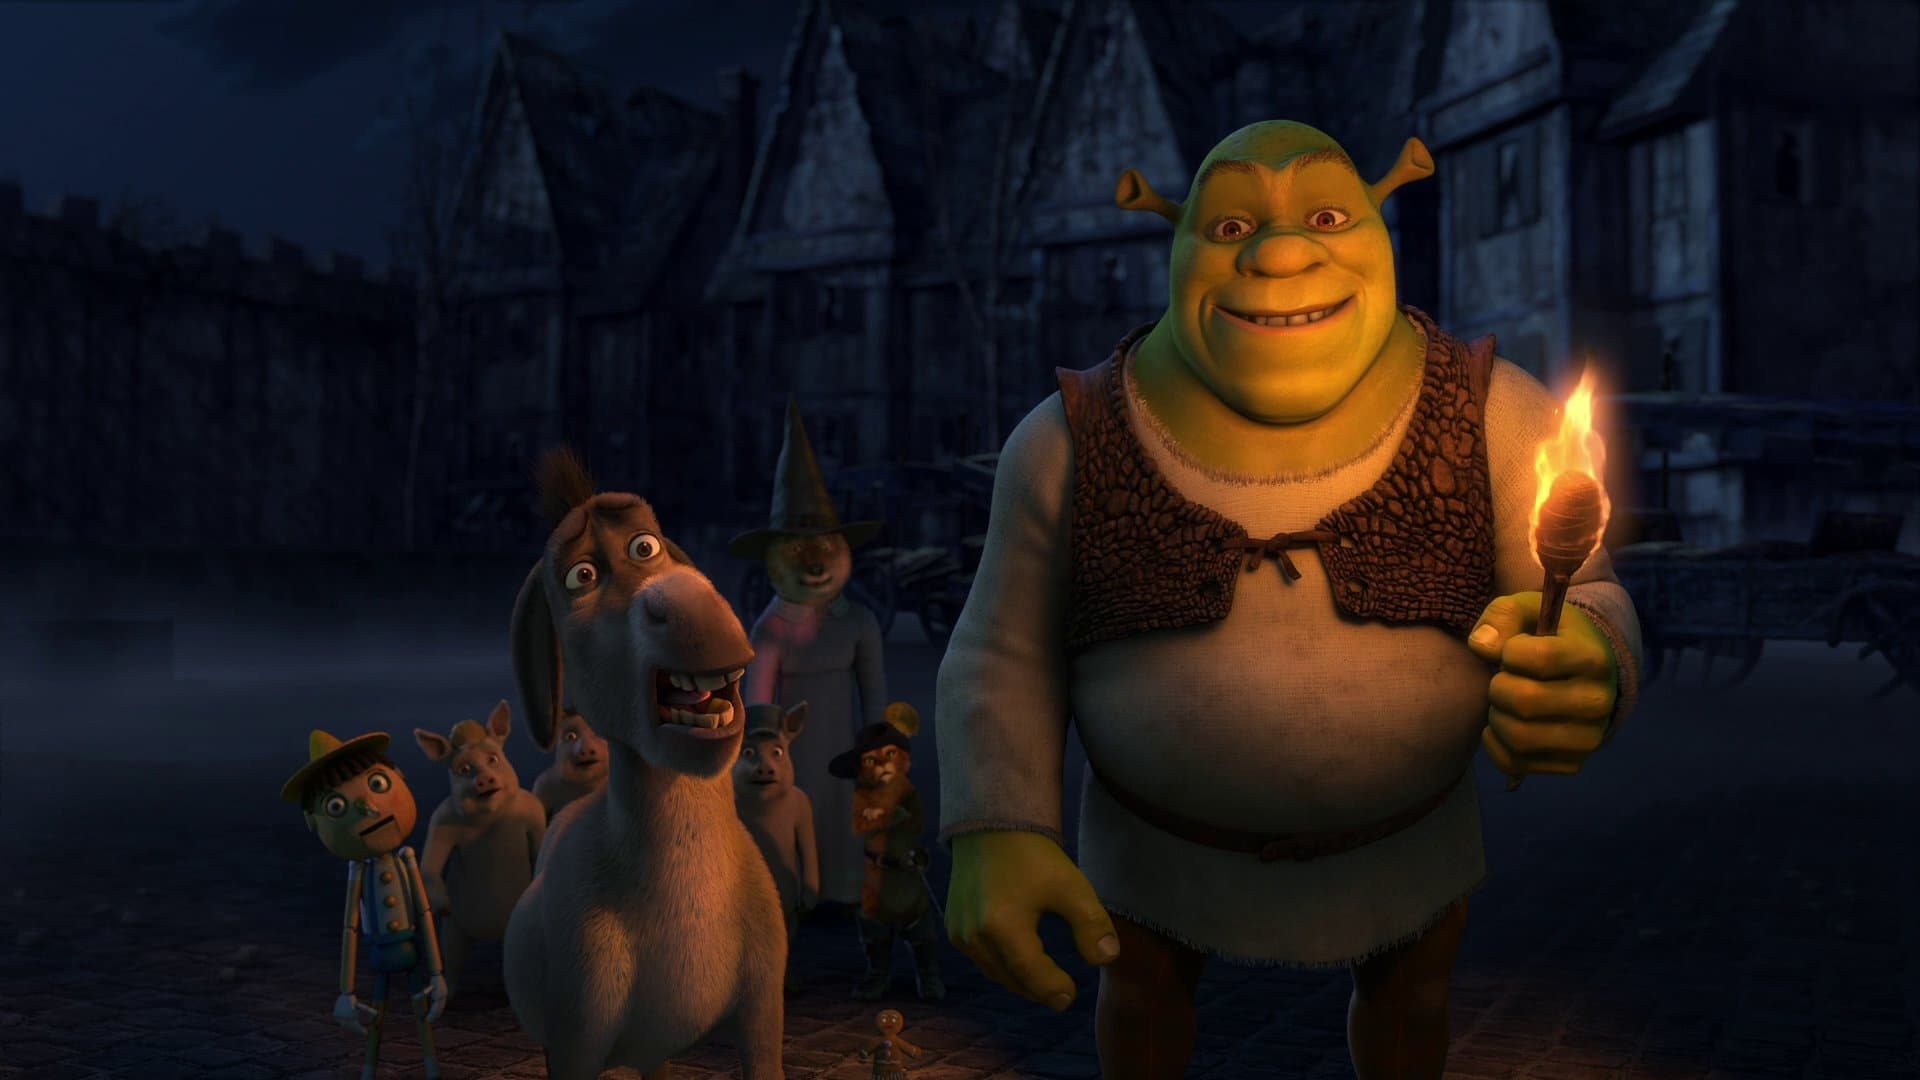 Shrek, fais-moi peur ! (2010)